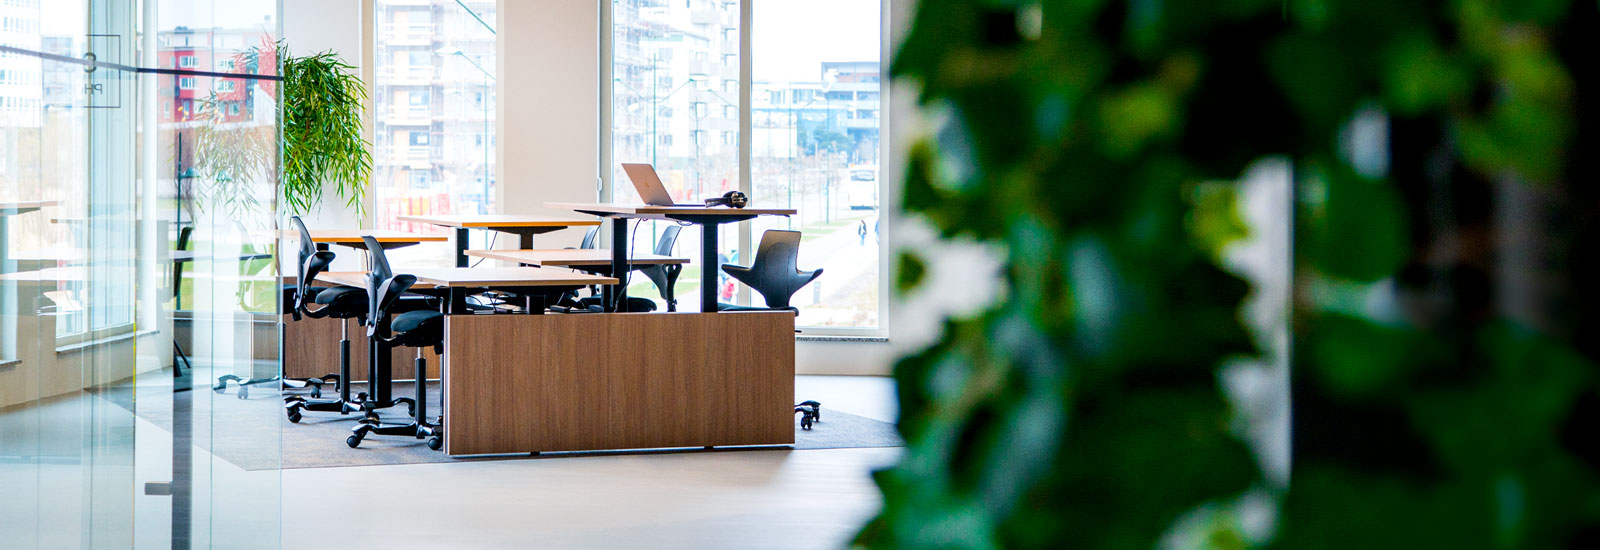 Pir29 Coworking i Malmö kan erbjuda fasta arbetplatser i kontorslandskap, inklusive personliga förvaringsskåp.